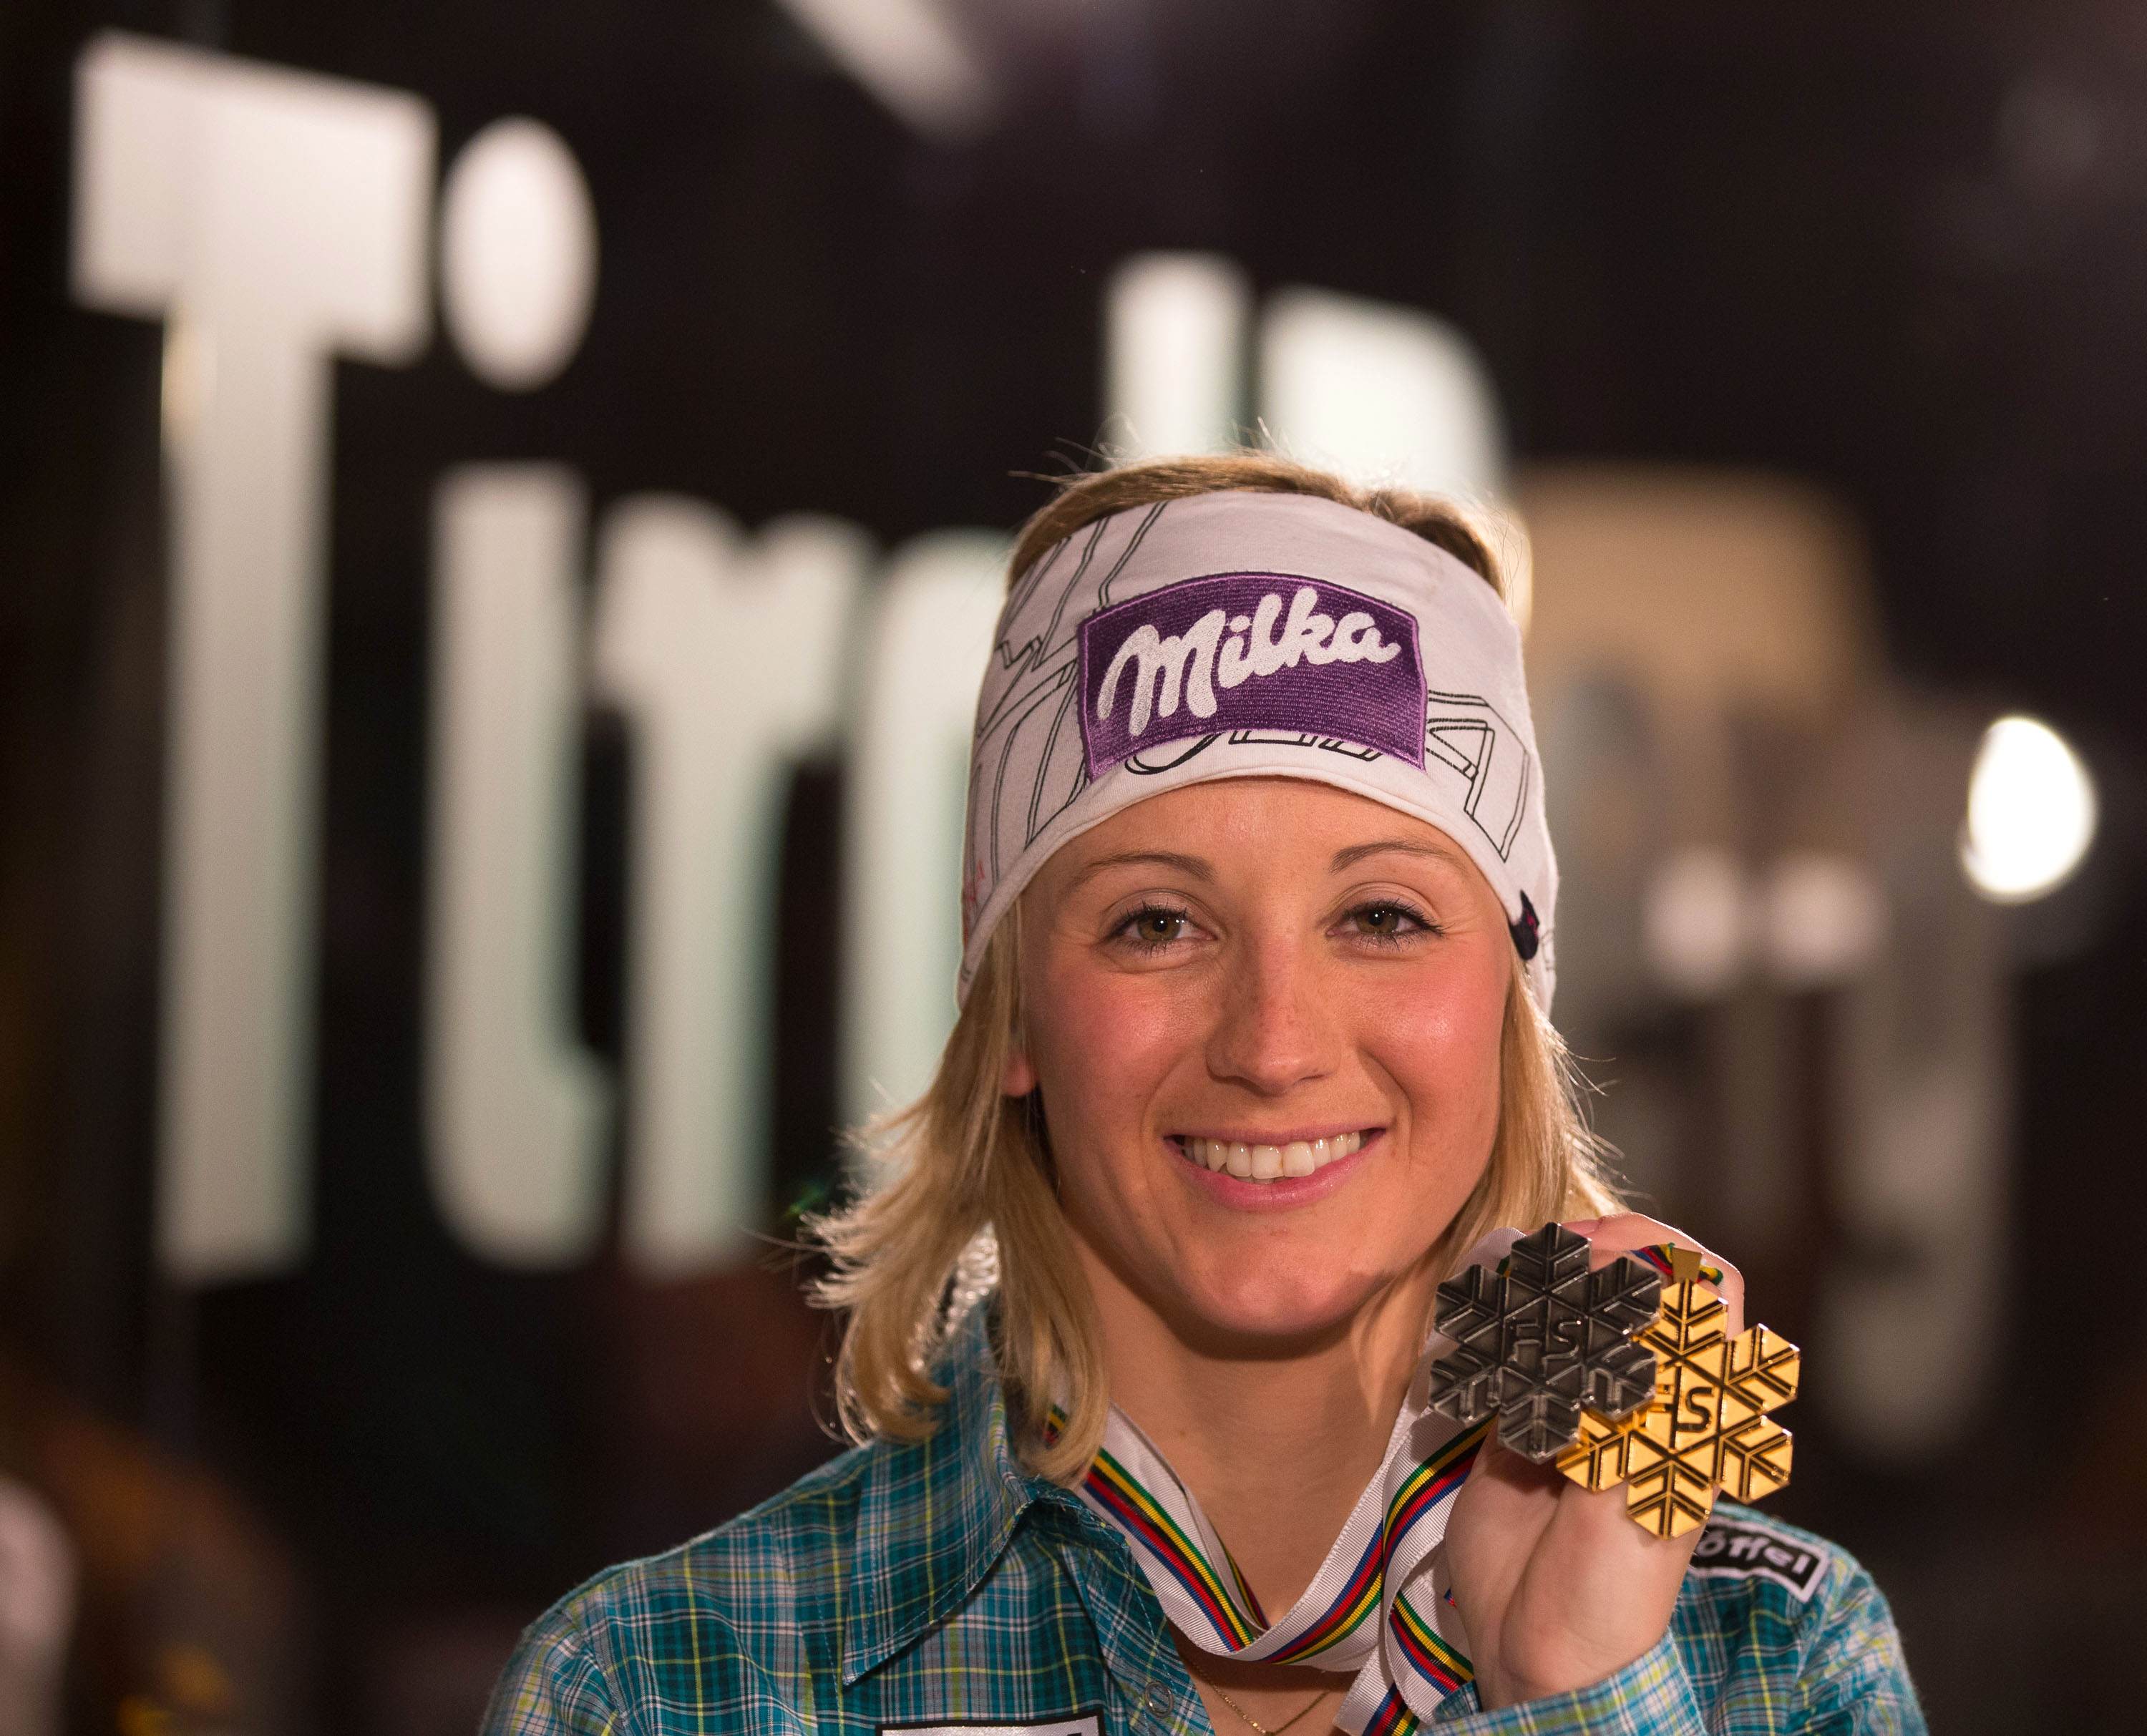 Michaela Kirchgasser holte Silber im Slalom und feierte ihre Medaille bei der "TirolBerg Friends Night", mit der der Tirol-Auftritt bei der Ski-WM in Schladming seinen würdigen Abschluss fand